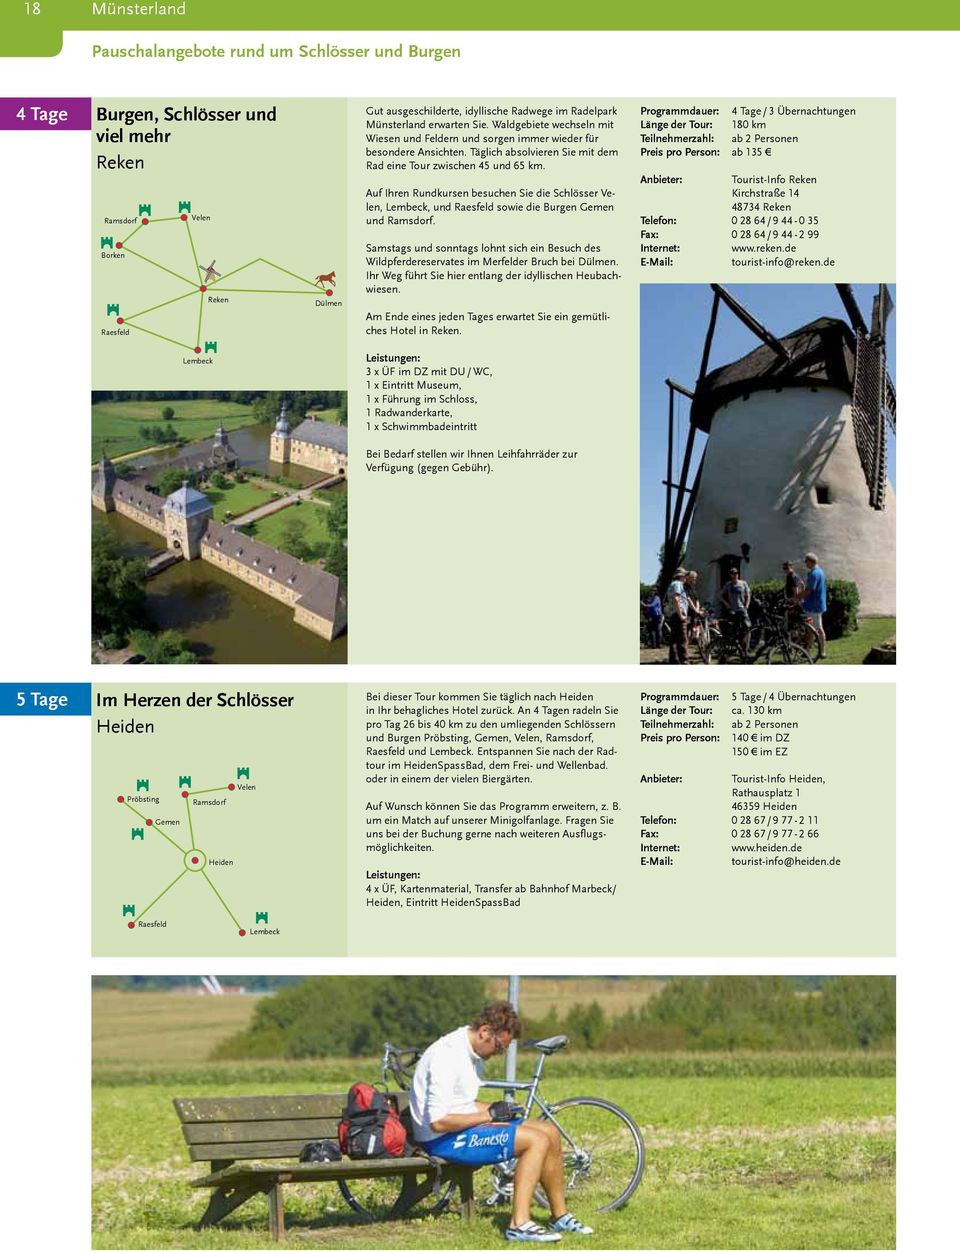 Täglich absolvieren Sie mit dem. Rad eine Tour zwischen 45 und 65 km.. Auf Ihren Rundkursen besuchen Sie die Schlösser Velen, Lembeck, und Raesfeld sowie die Burgen Gemen xxx und Ramsdorf.